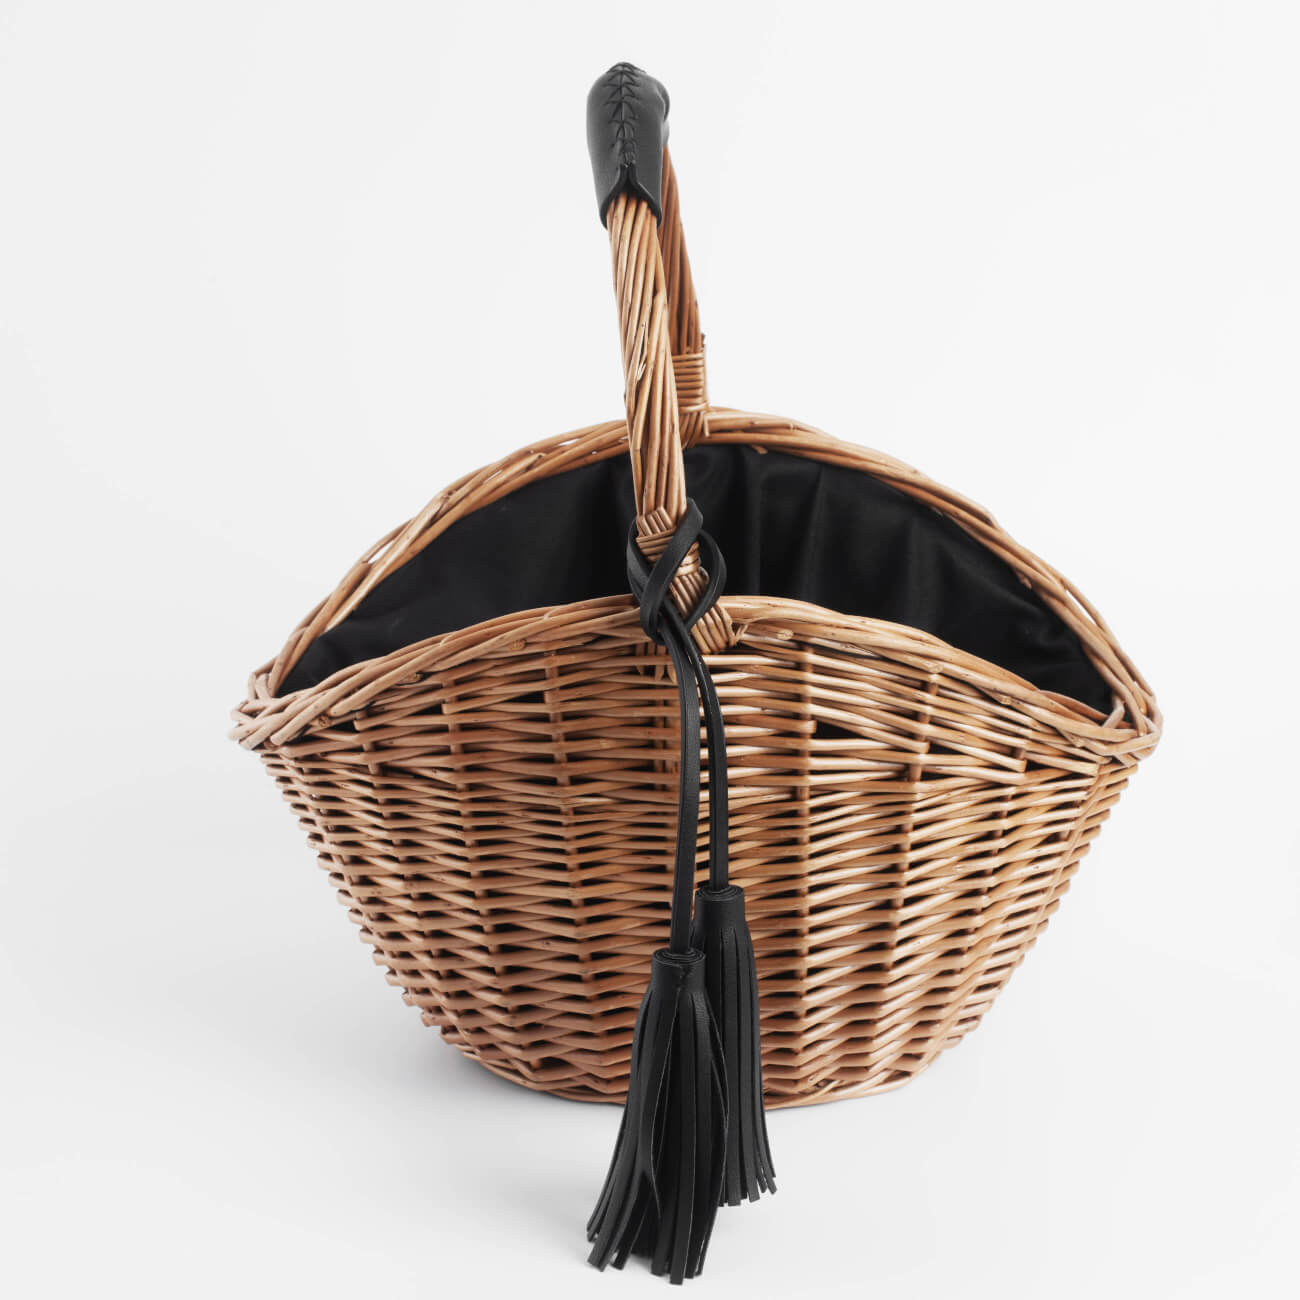 Корзина-сумка, 32 см, ива/полиэстер, бежево-черная, Black style jemina viii корзина